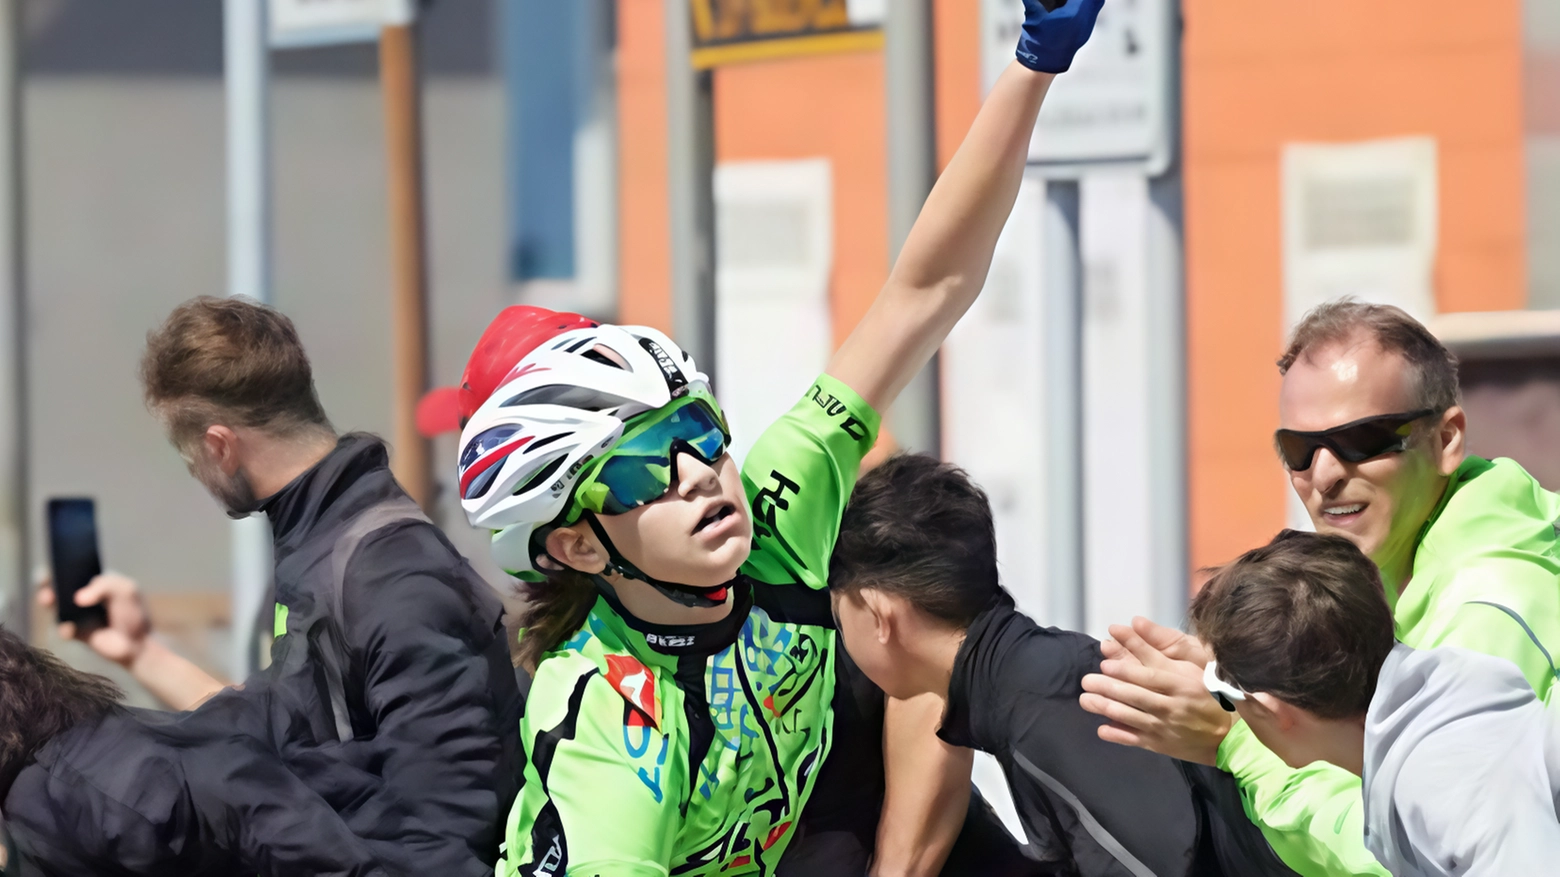 Giovani ciclisti brianzoli si distinguono nel Trofeo Dino Pietrella a Valmadrera, con vittorie di Isabel Di Sciuva e Nicoletta Berni. Ottimi piazzamenti anche per Riccardo Dalola e Matteo Jacopo Gualtieri.